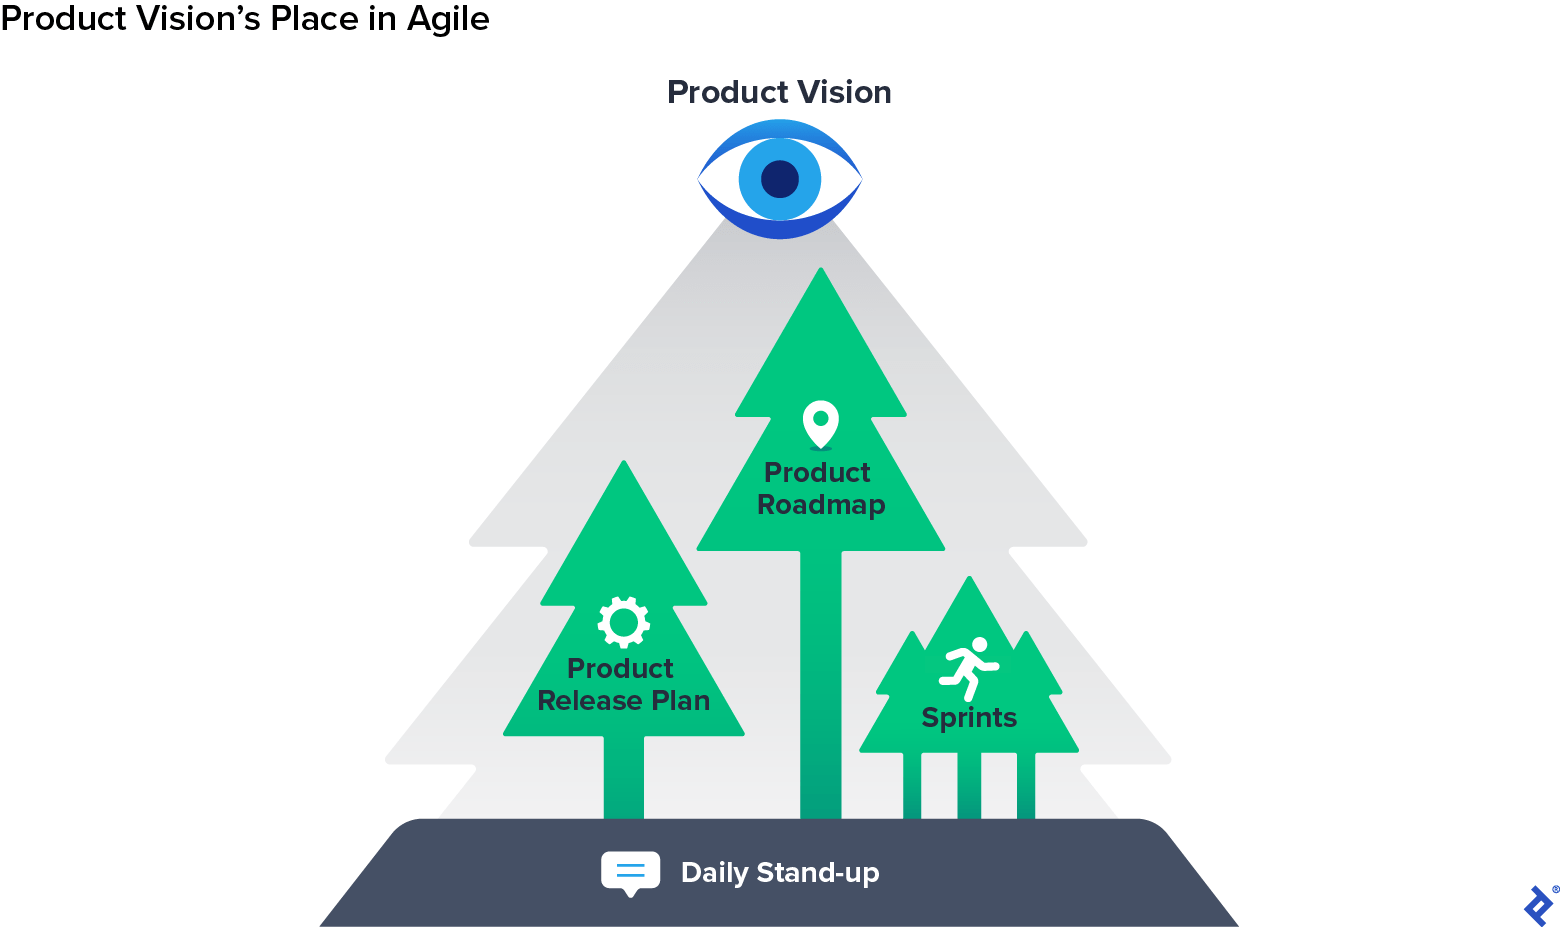 Une forêt étiquetée Product Vision comprenant des arbres Sprints étiquetés, Product Release Plan et Product Roadmap, sur un sol étiqueté Daily Stand-up.